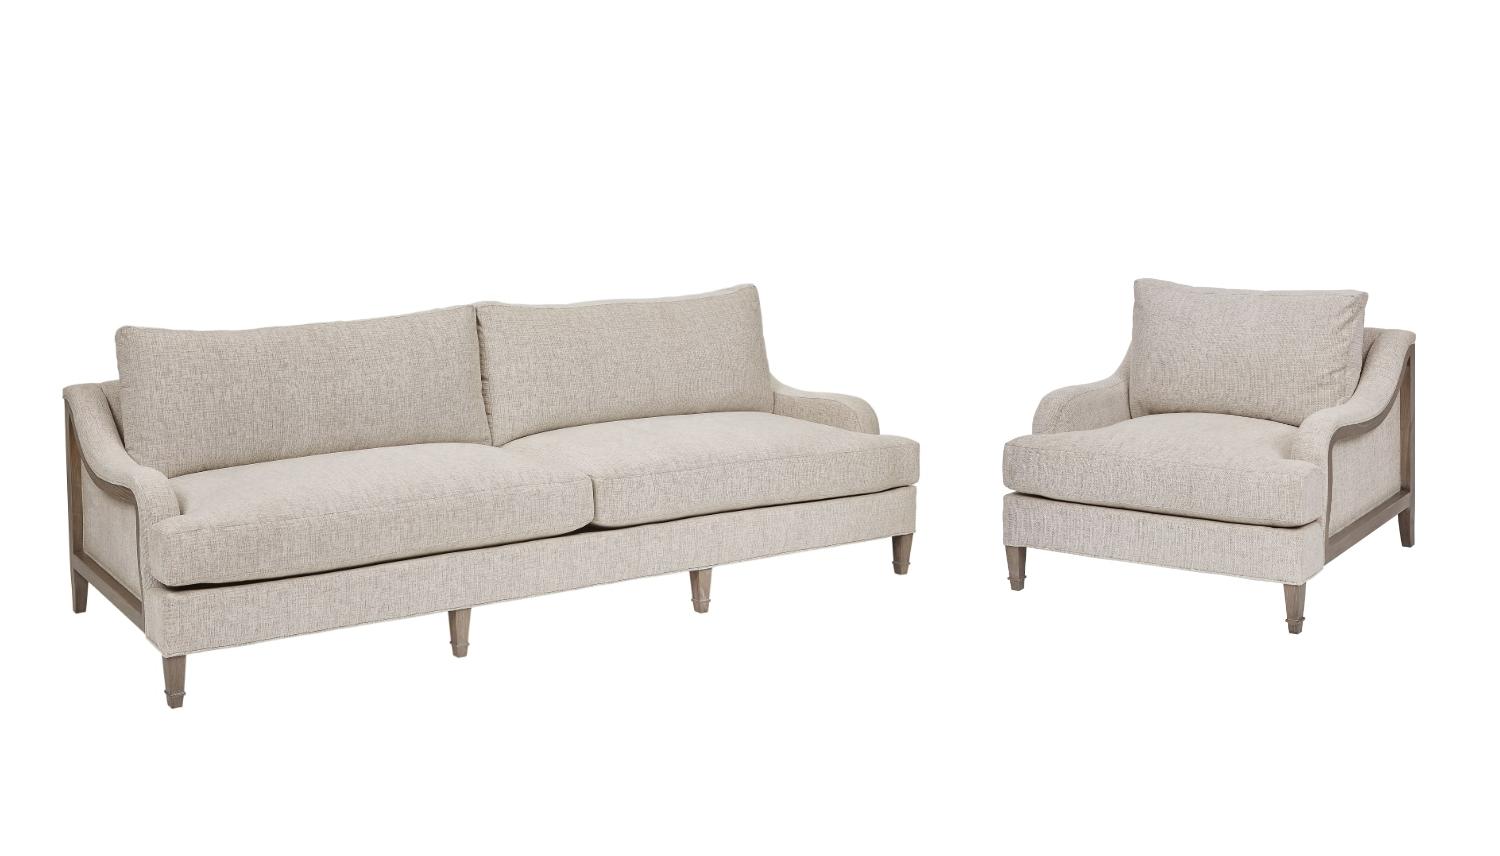 

    
Beige & Brown Fabric Sofa + Chair Set 2Pcs by A.R.T. Furniture Tresco
